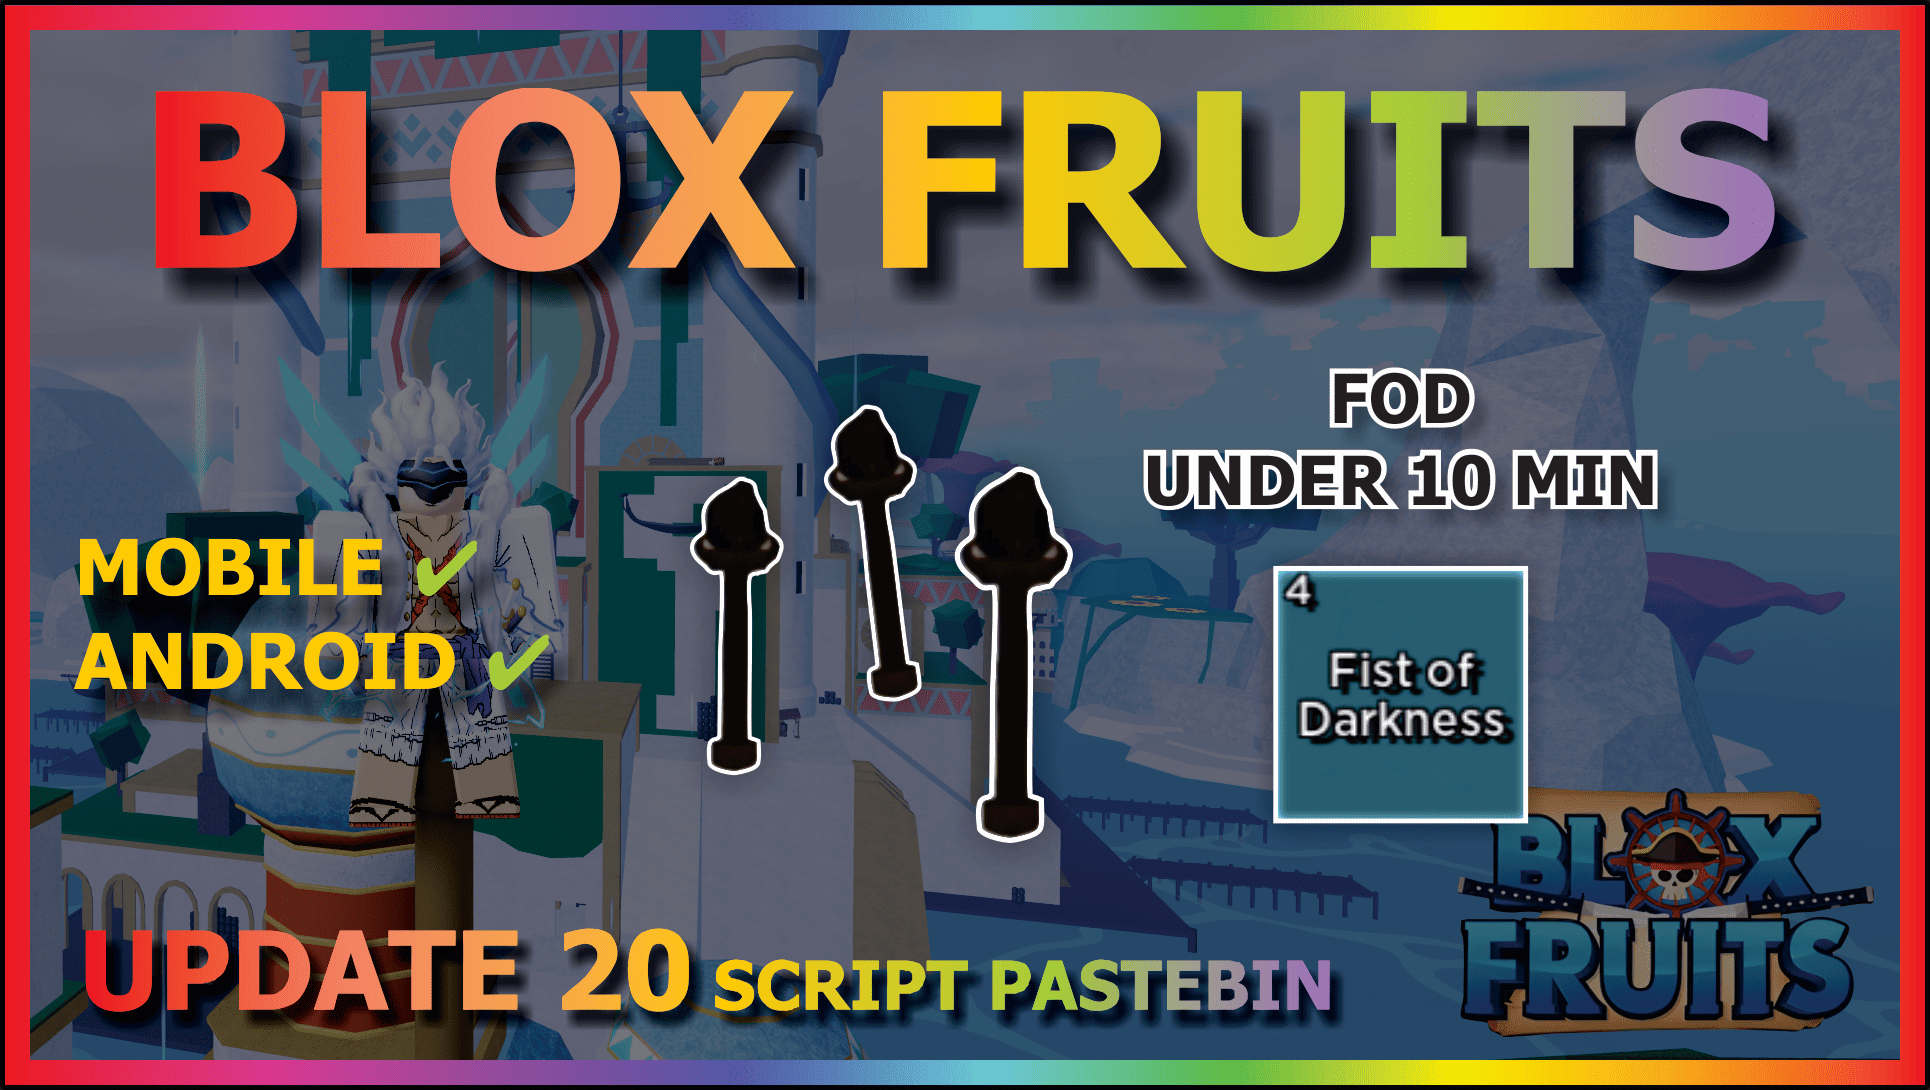 blox fruit script pastebin 2023 the script is just below the one with